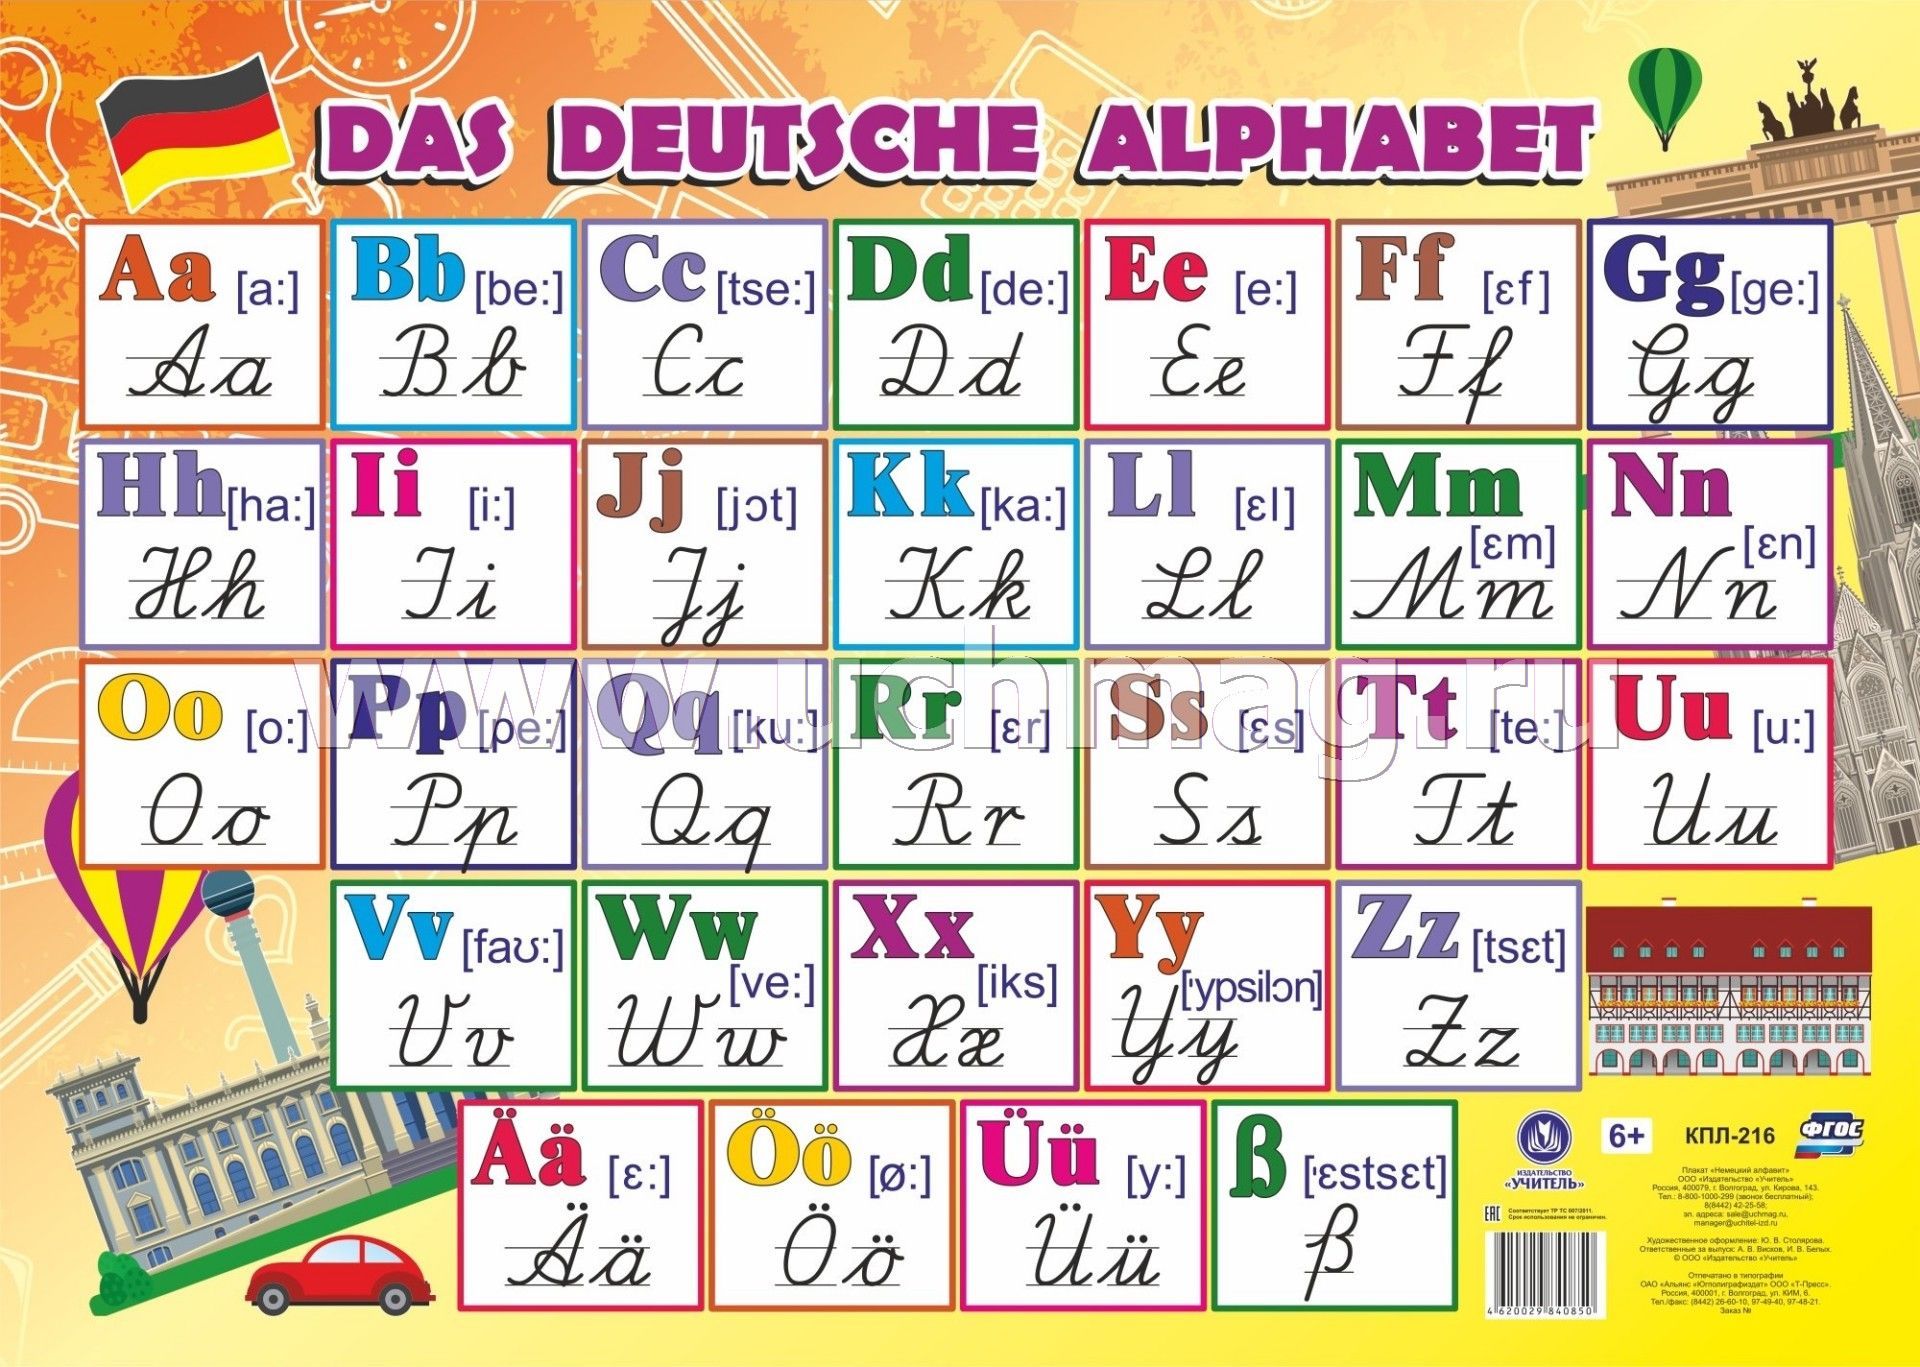 Ноябрь по немецкому. Немецкий алфавит с произношением и прописными буквами. Немецкий алфавит с произношением письменные буквы. Транскрипция немецкий язык алфавит прописные. Немецкий прописной алфавит с произношением.